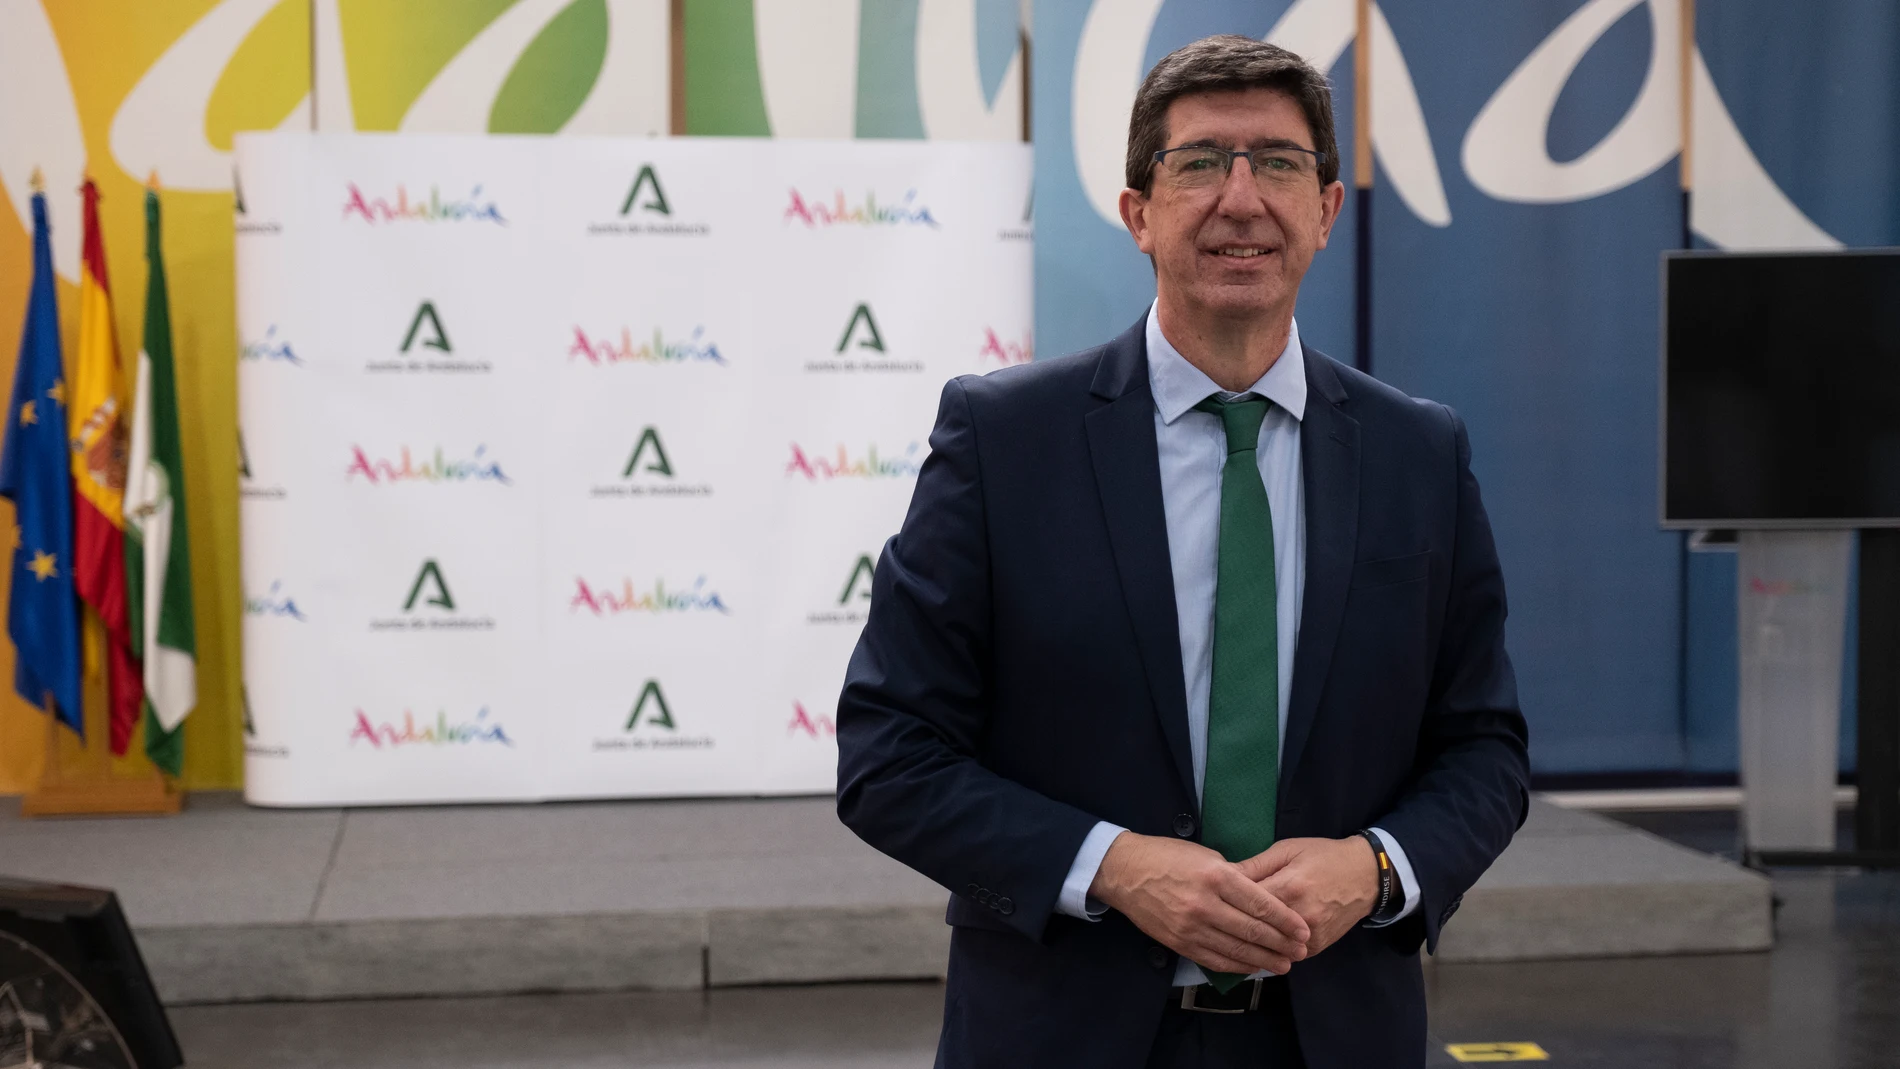 Juan Marín Lozano, vicepresidente y consejero de Turismo, Regeneración, Justicia y Administración Local de la Junta de Andalucía